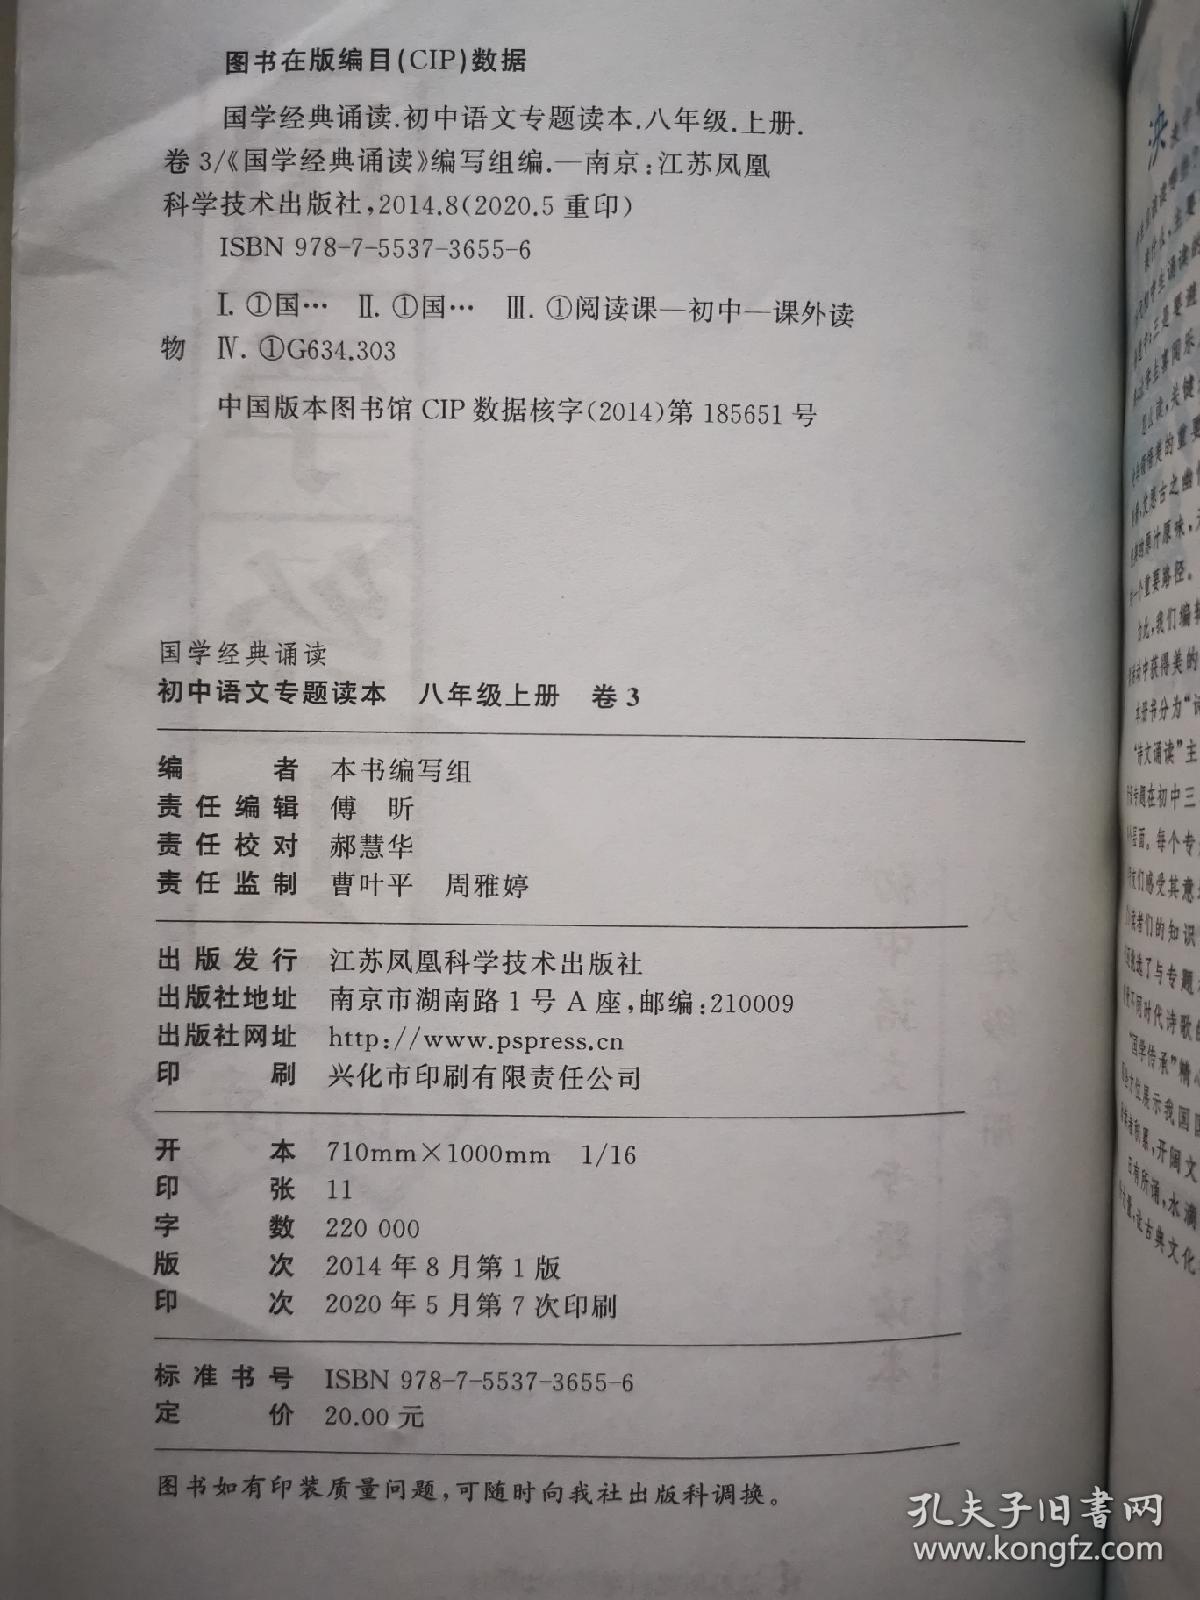 国学经典诵读：初中语文专题读本（八年级上册）